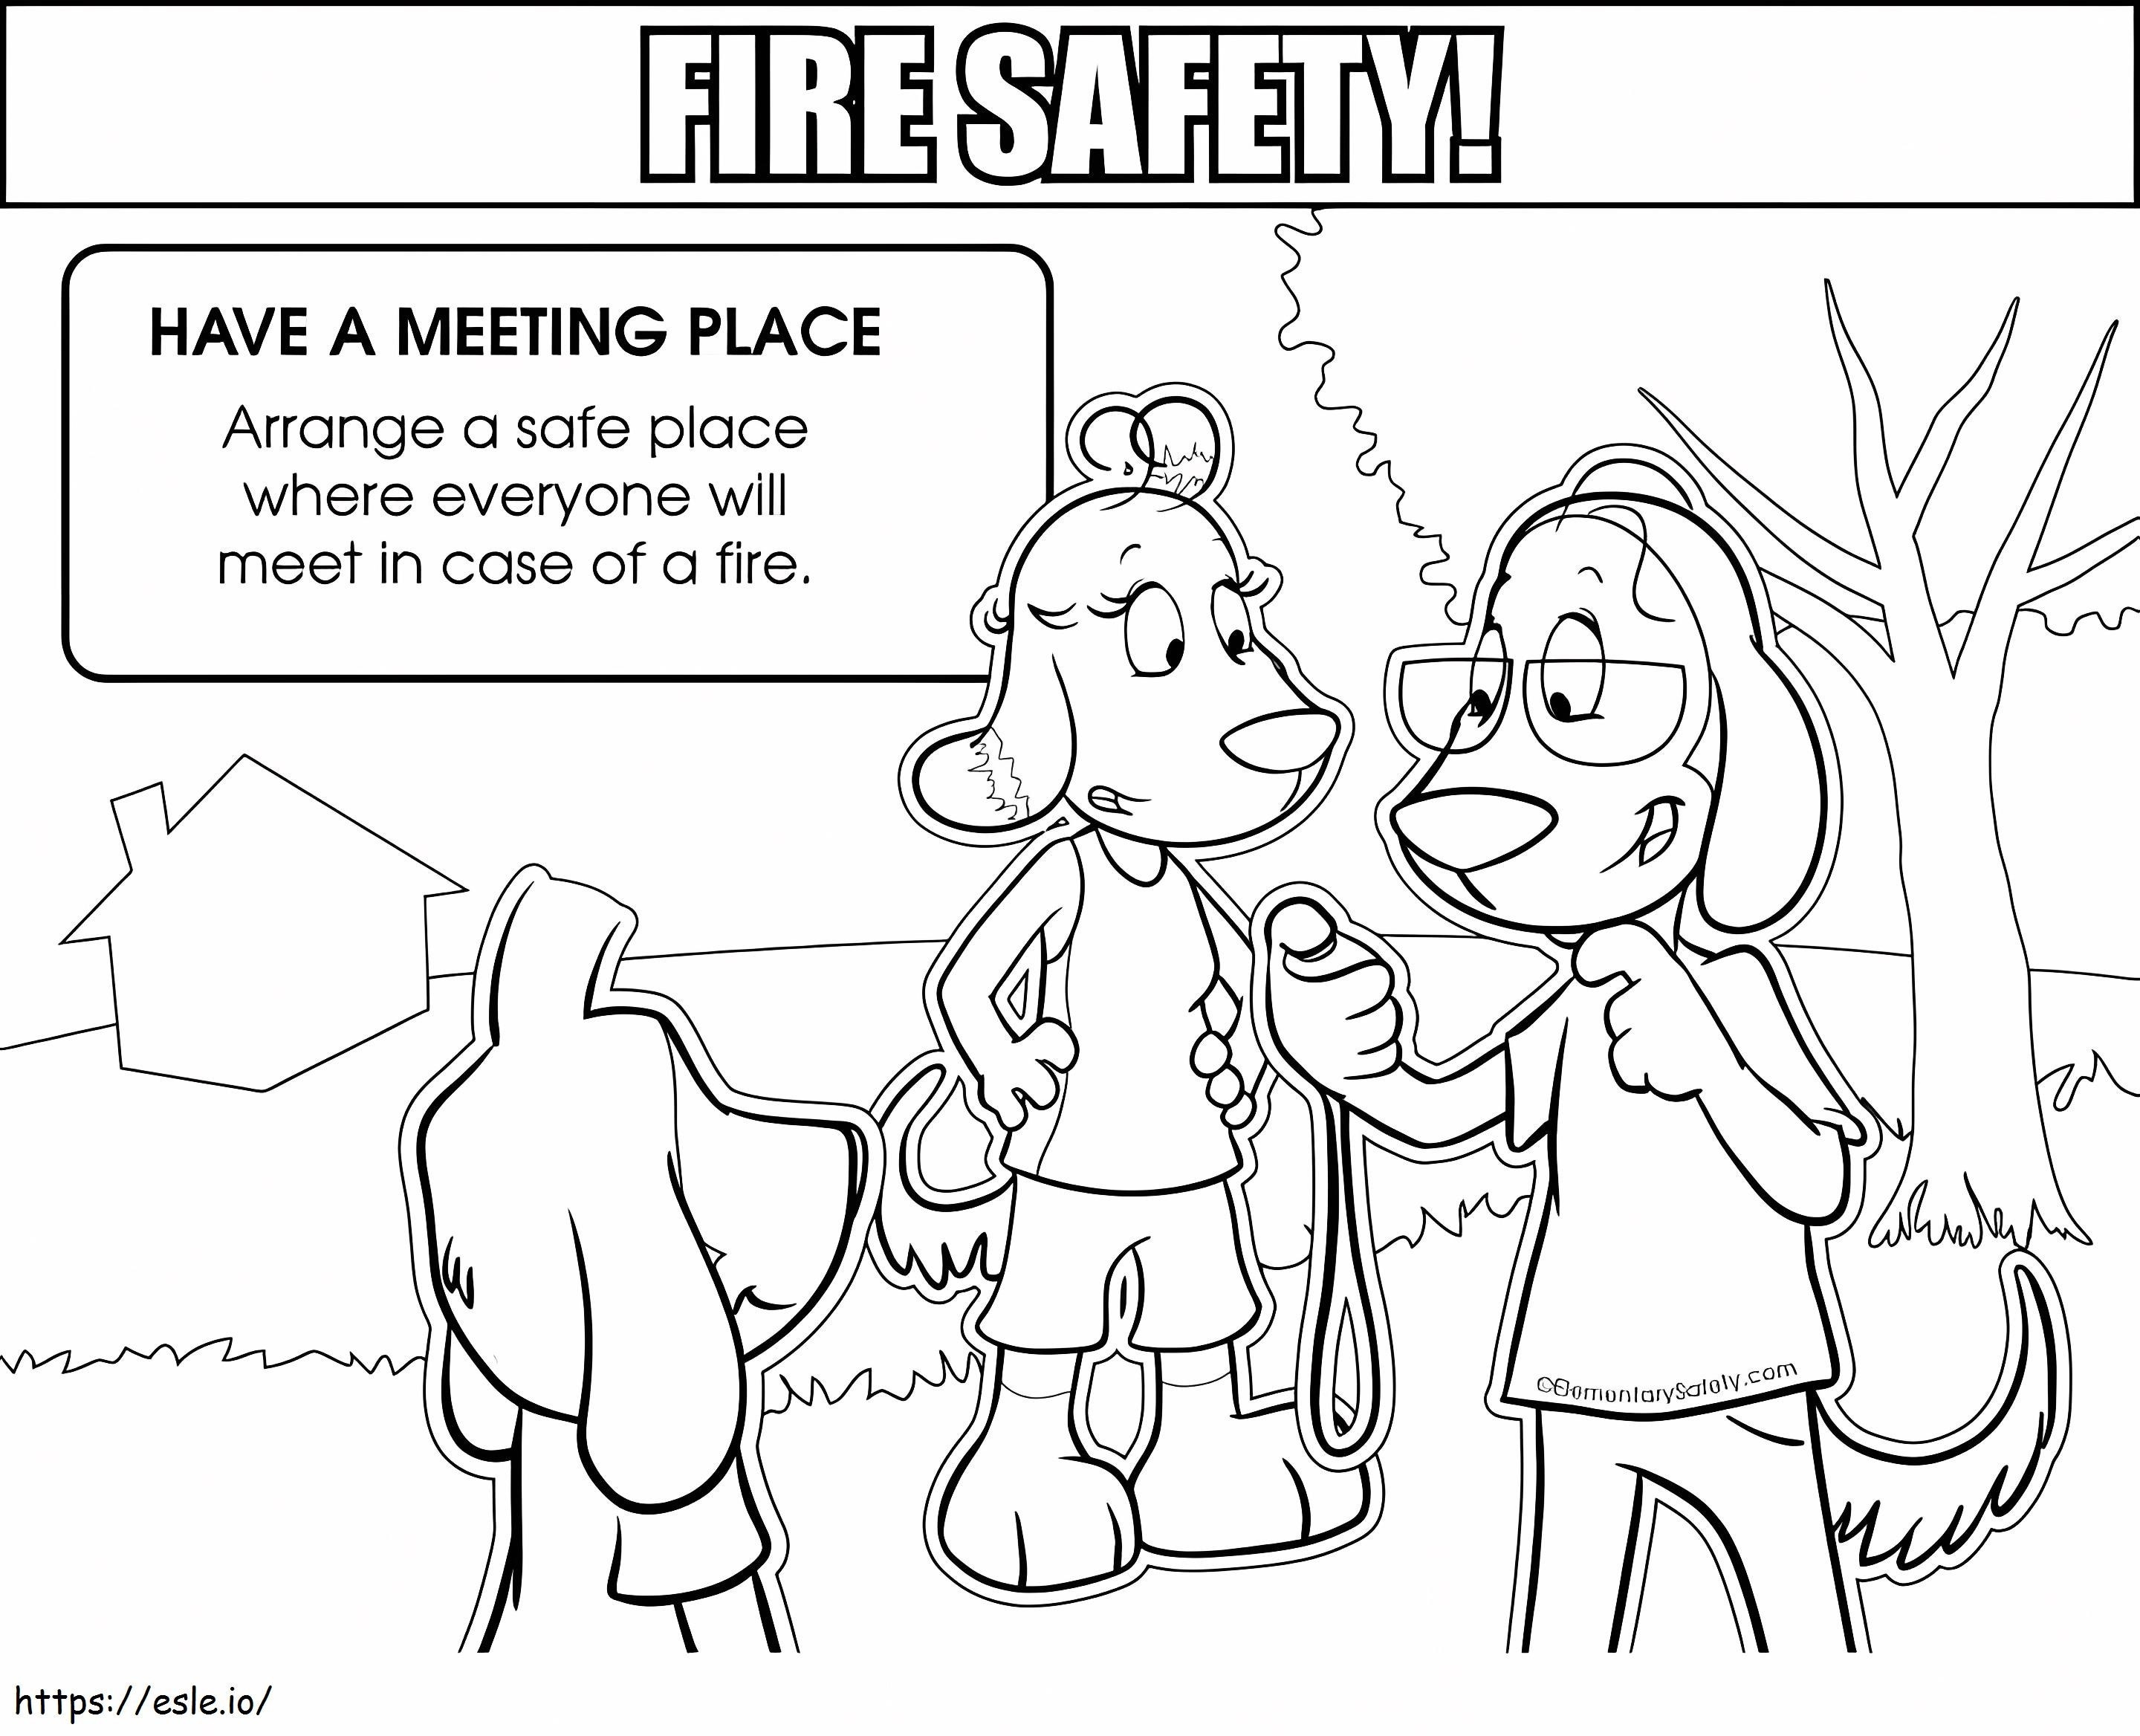 Loc de întâlnire sigur Siguranța împotriva incendiilor de colorat